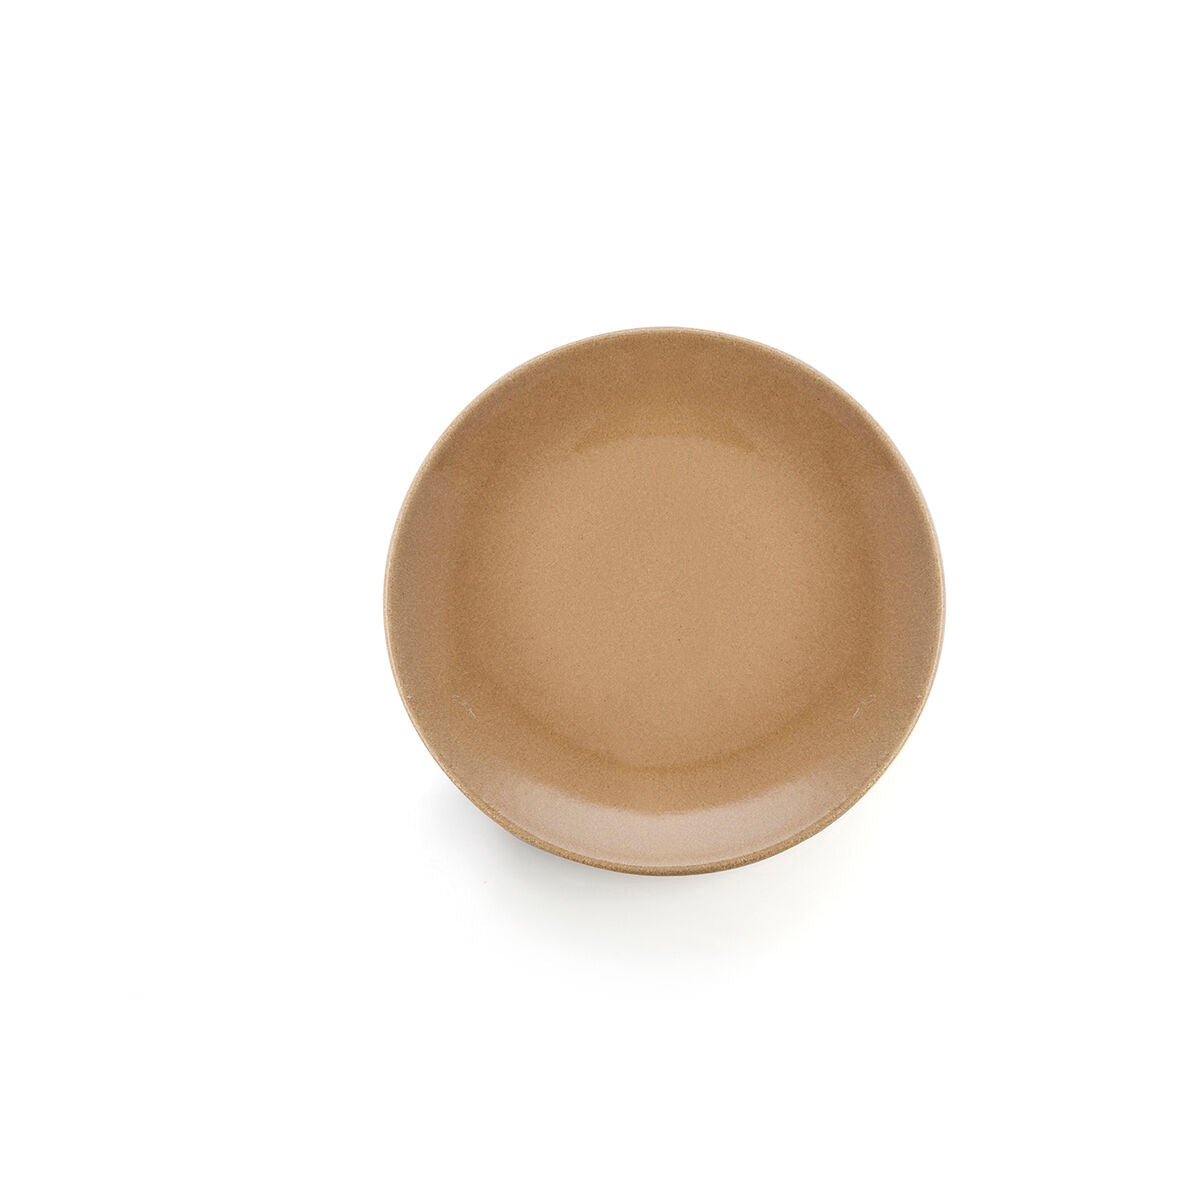 Beige Flat plate in Ceramic (25 cm) (8 Units)